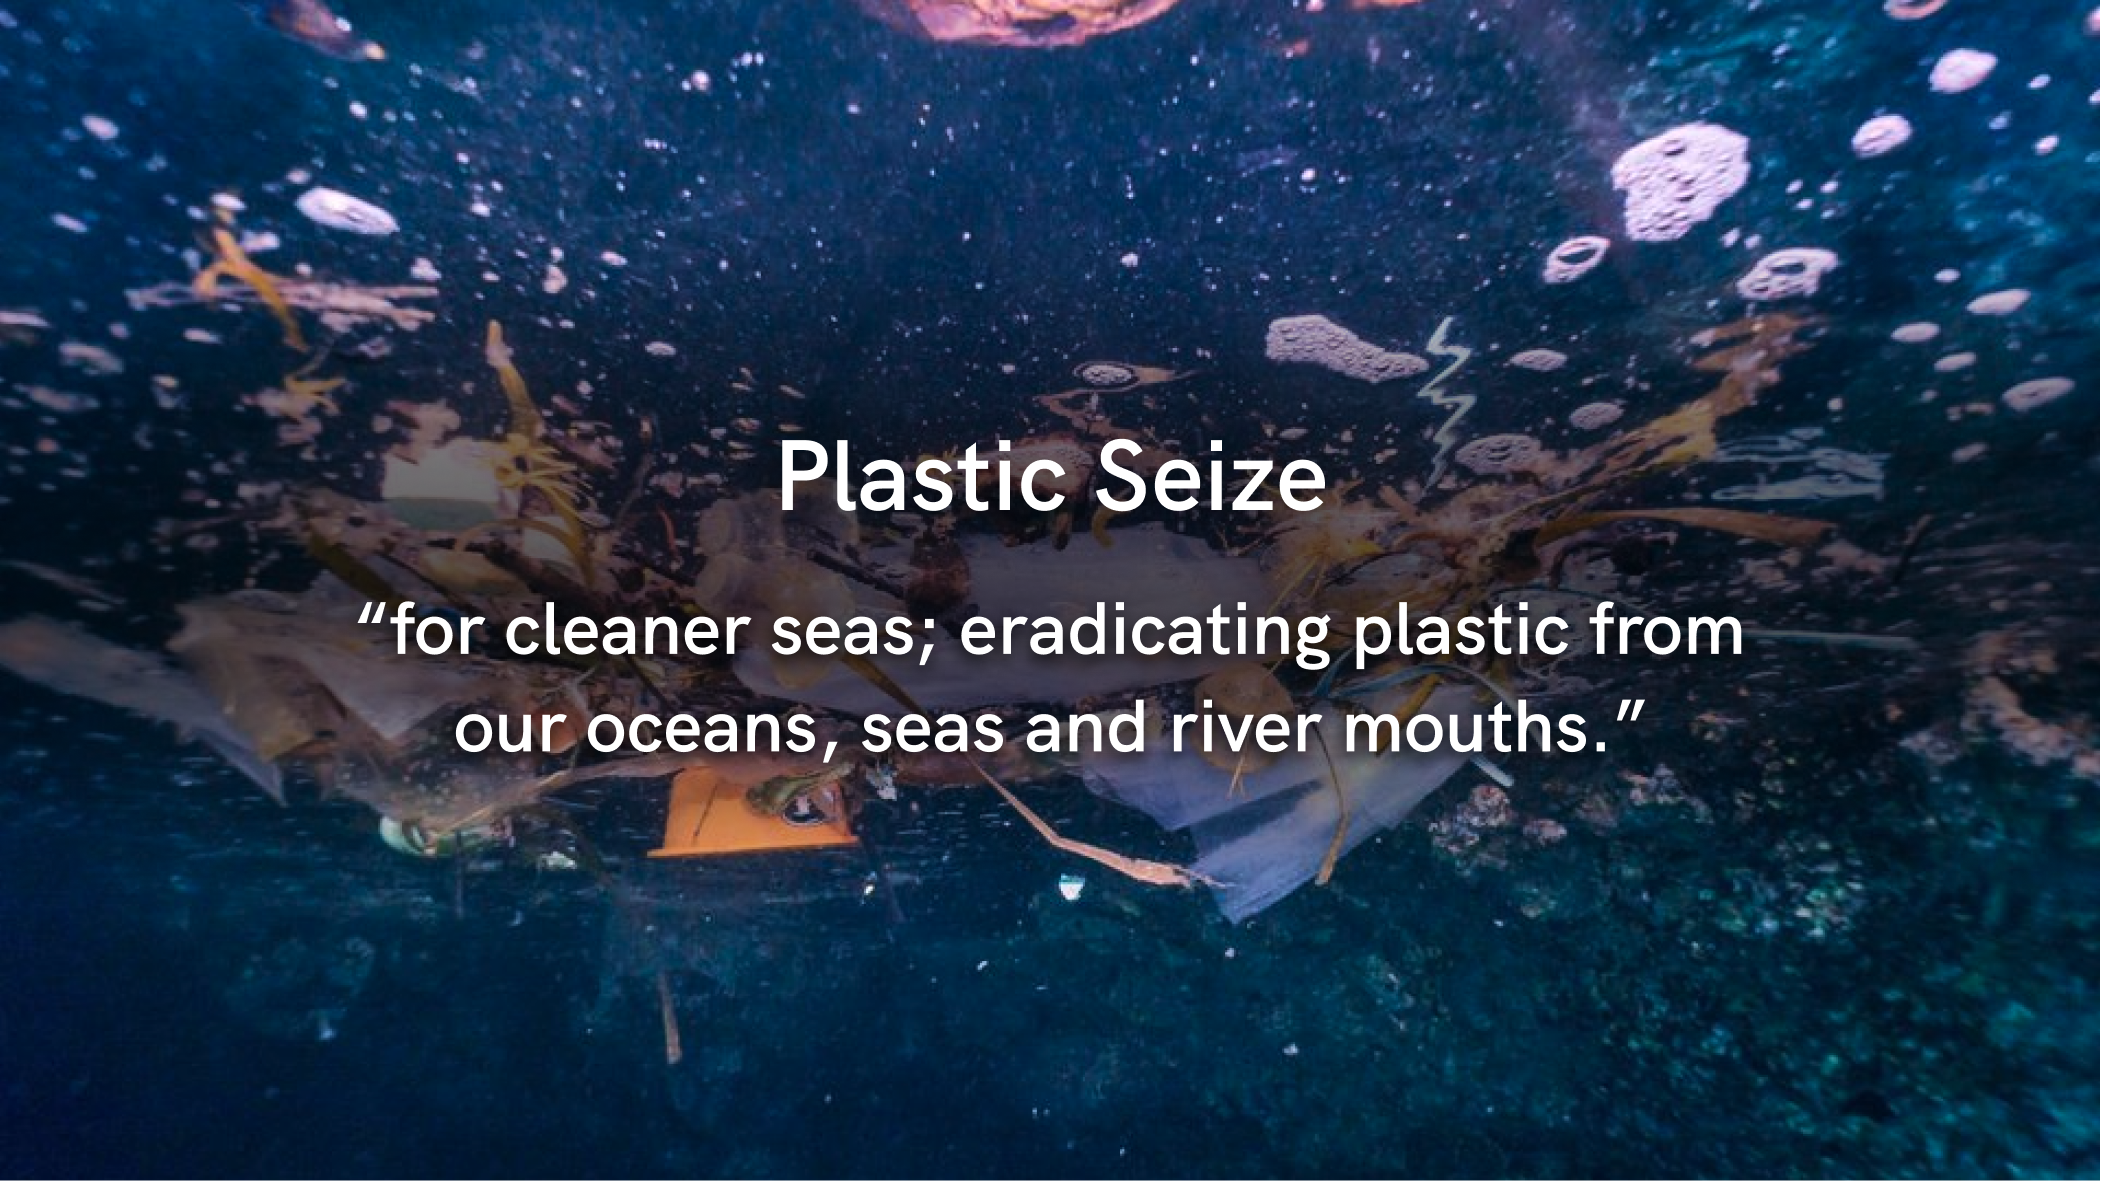 Plasticseize: Safeguarding Oceans & Wildlife Through Plastic Collection